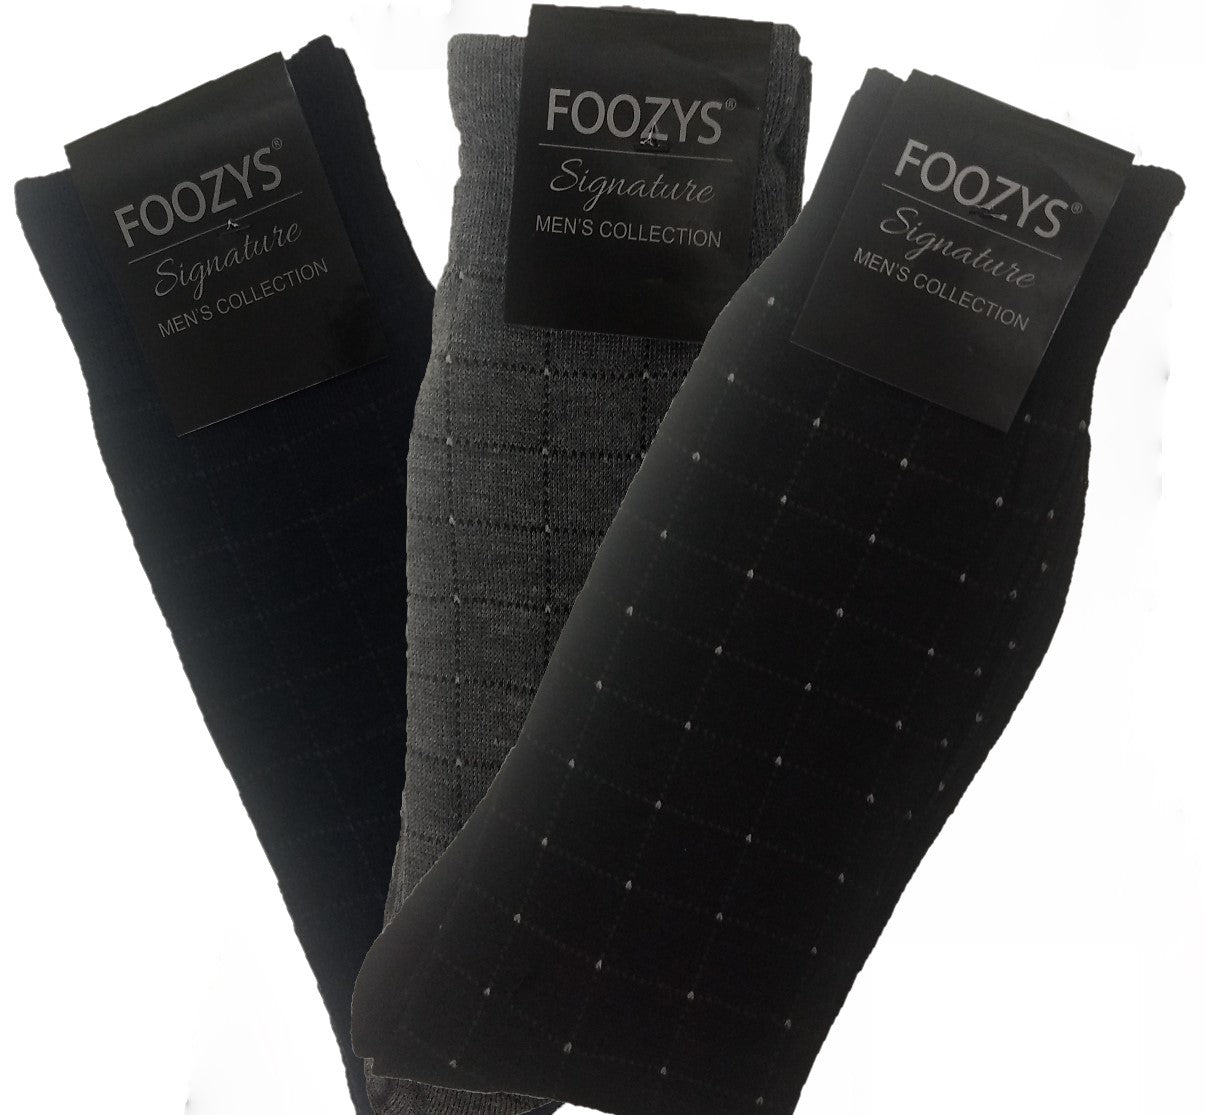 Men's Foozys Dress Socks